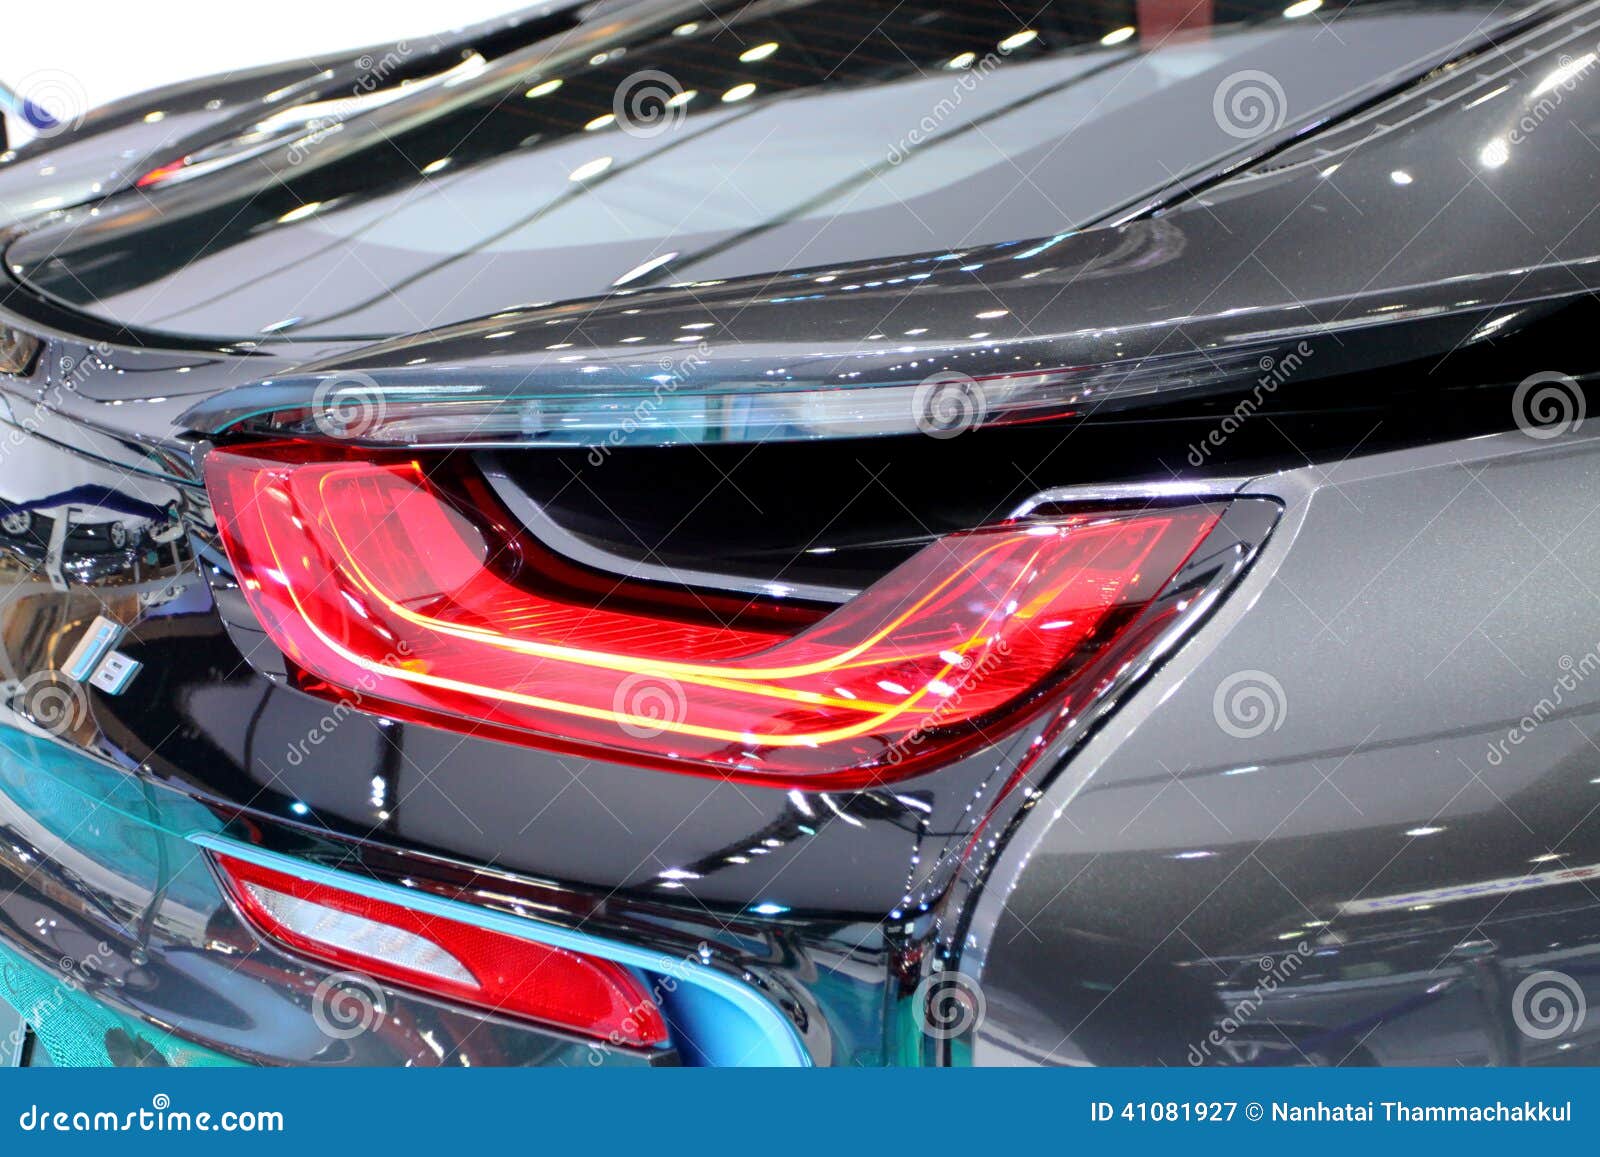 Rücklicht Der Innovation Ca BMW-Reihe I8 Redaktionelles Stockfotografie -  Bild von erscheinen, darstellung: 41081927